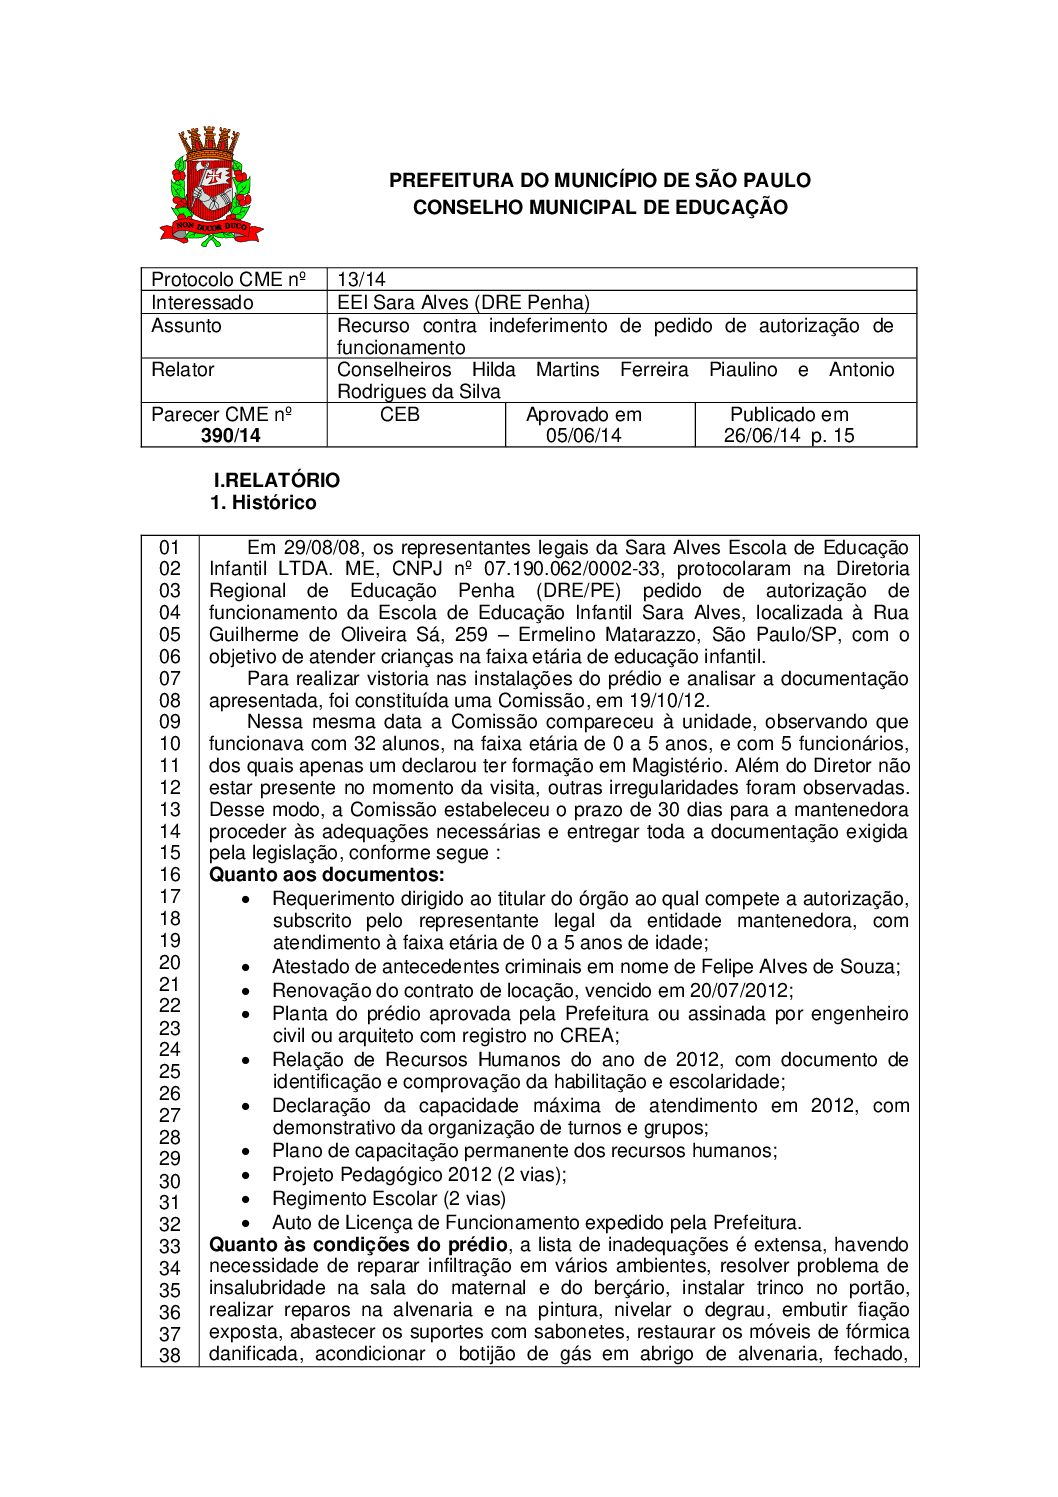 Parecer CME nº 390/2014 - EEI Sara Alves (DRE Penha) - Recurso contra indeferimento de pedido de autorização de funcionamento 